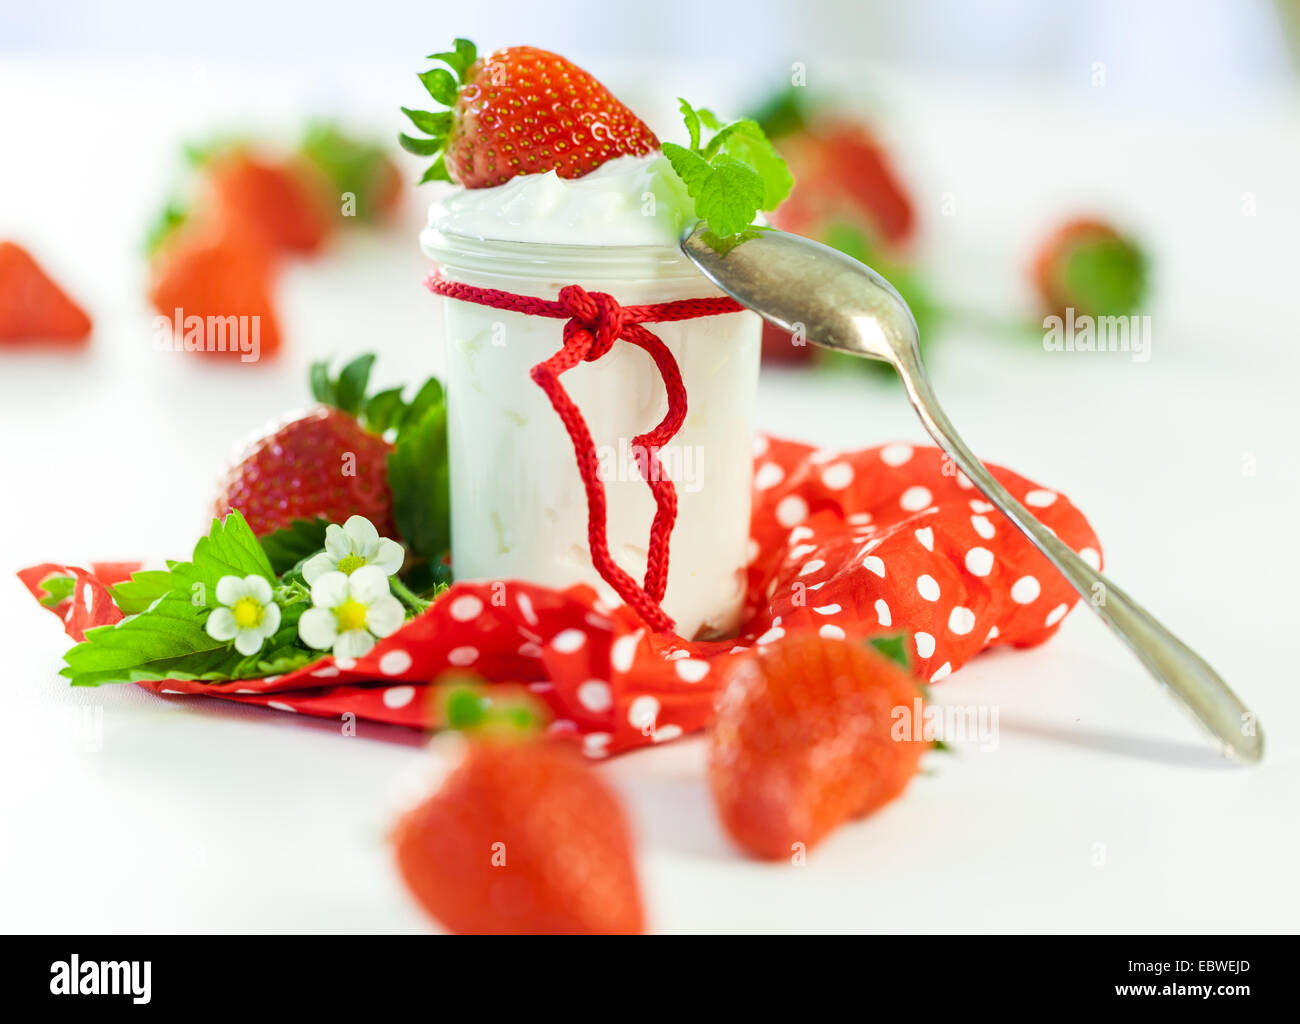 La ferme rouge frais mûrs fraises avec un bocal en verre de yaourt sain servi sur un pays rouge à pois serviette pour un délicieux petit-déjeuner ou apéritif Banque D'Images